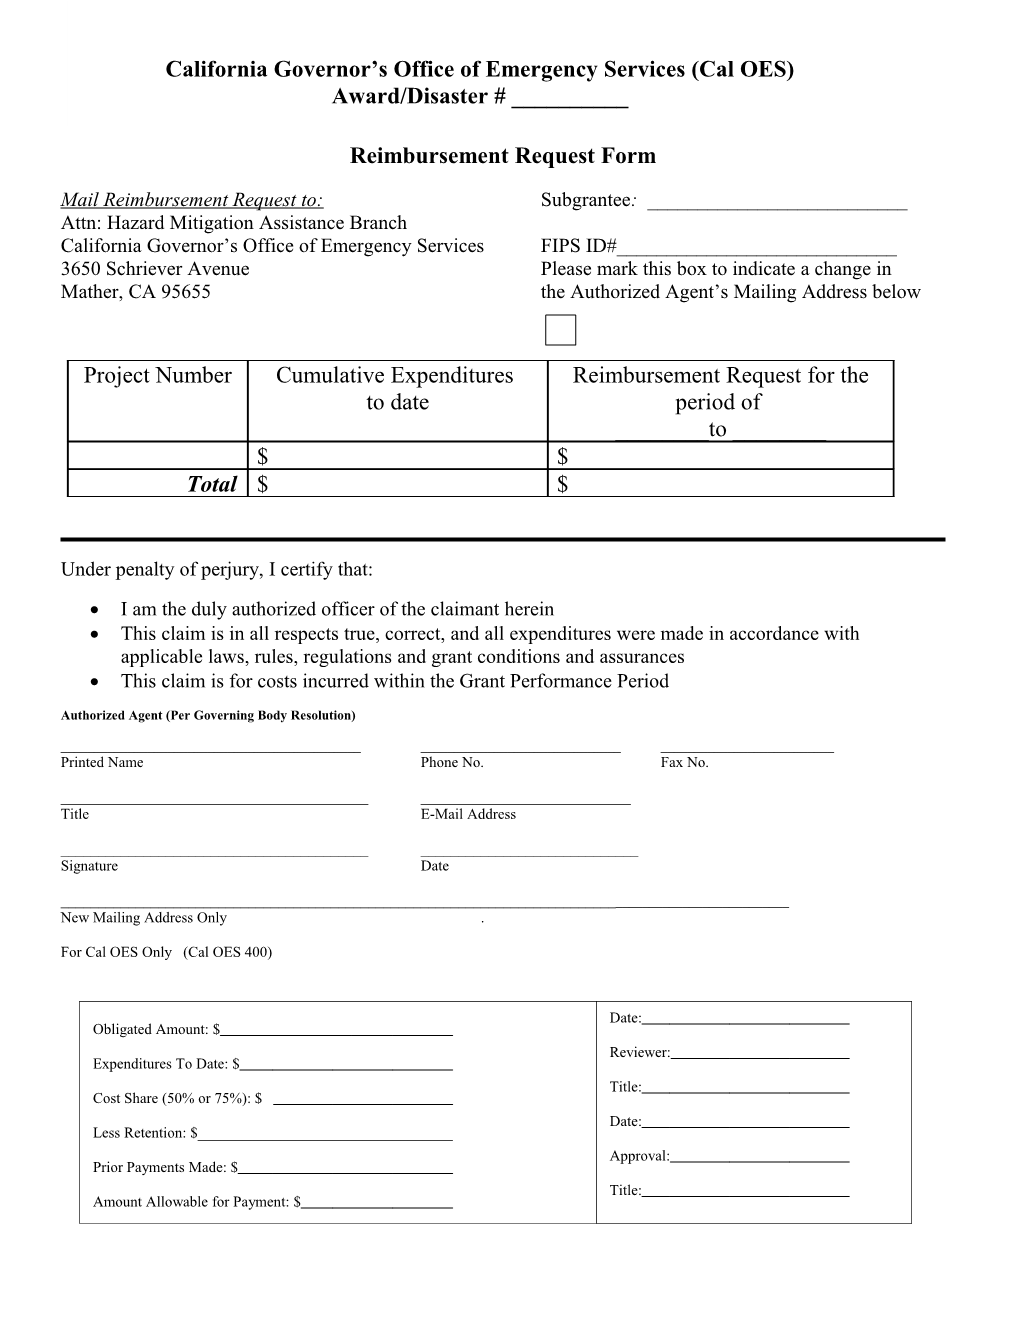 Grant Reimbursement Request Form